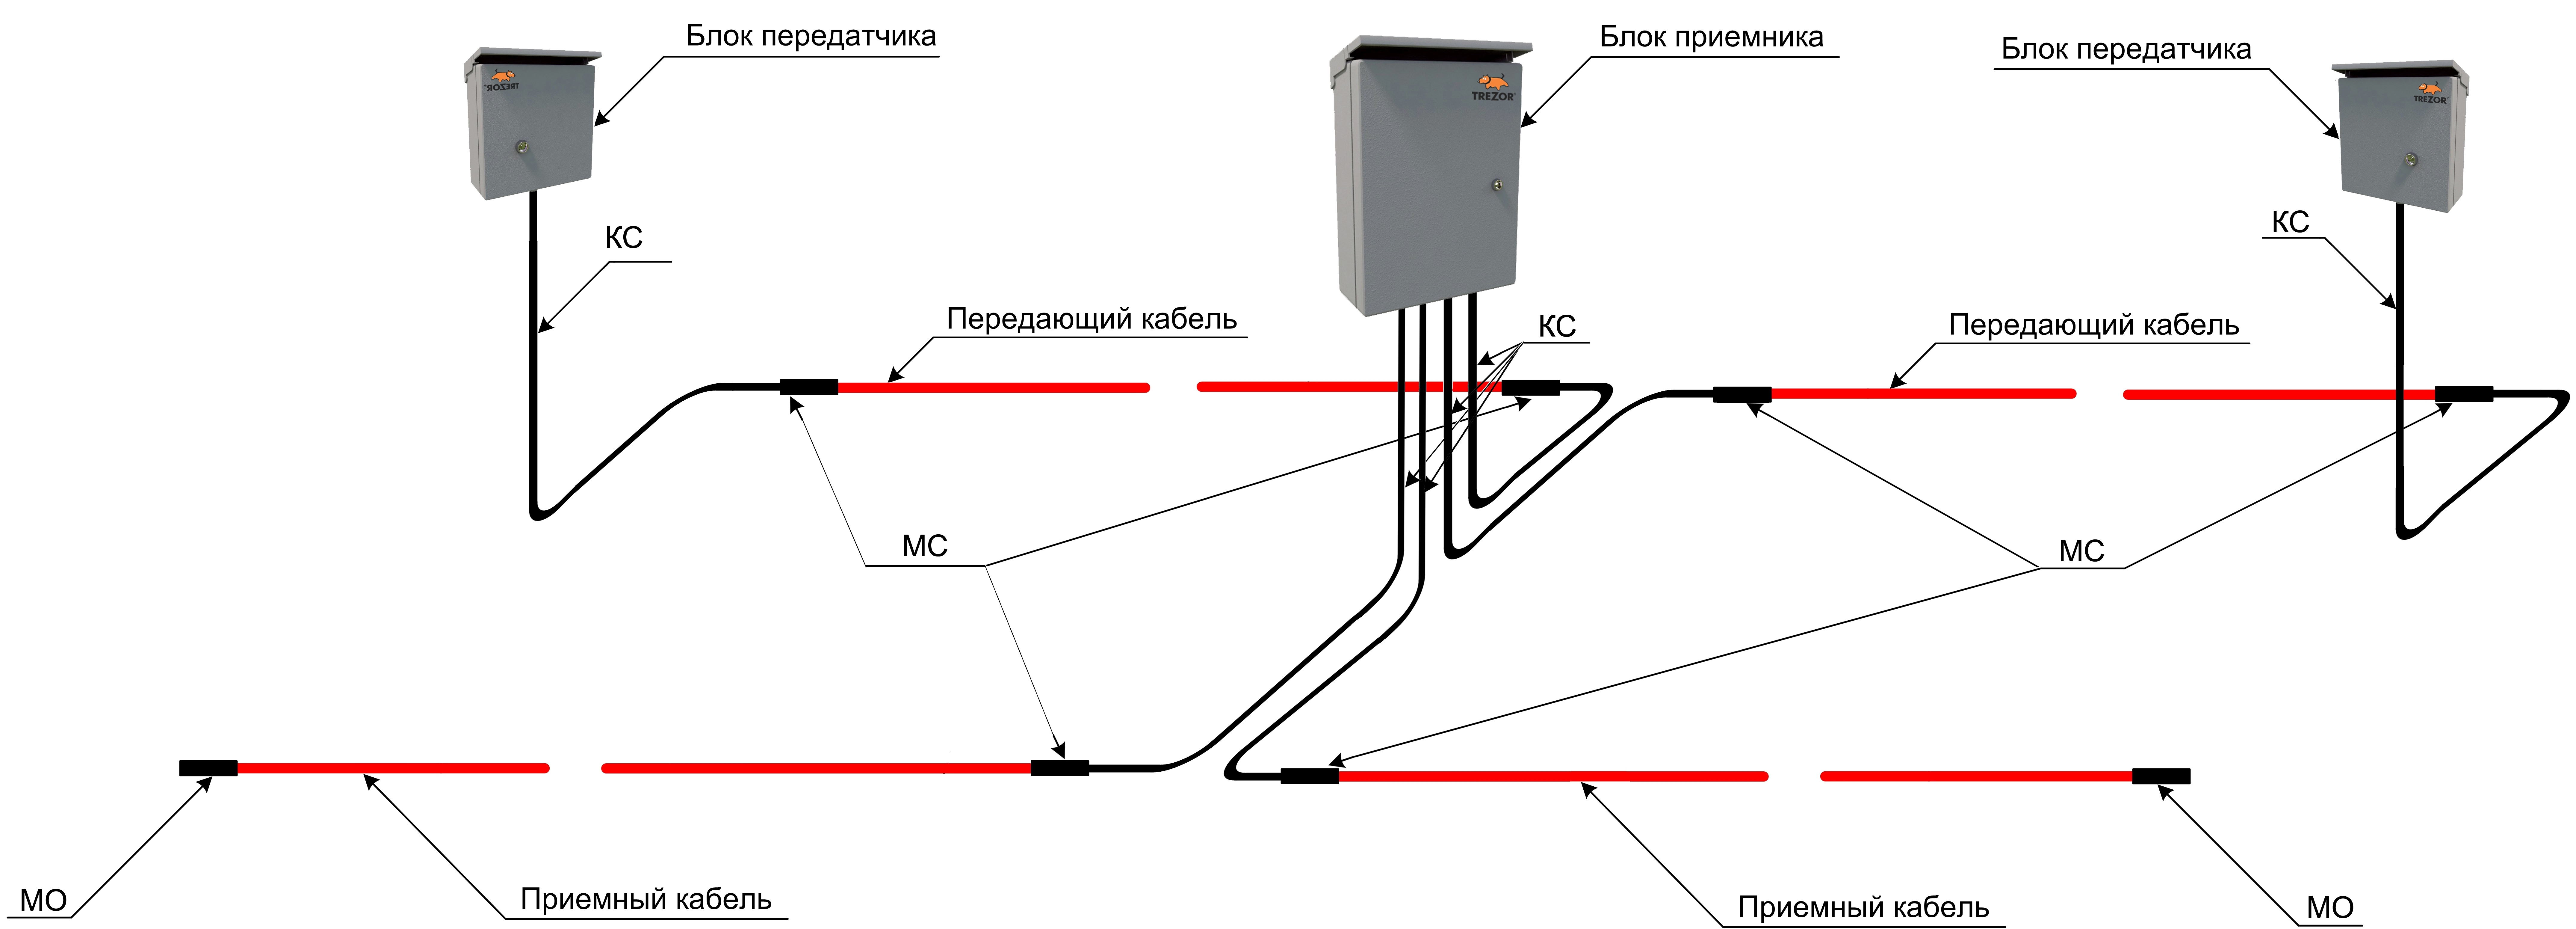 структурная схема радиоволнового средства обнаружения "ТРЕЗОР-Р"